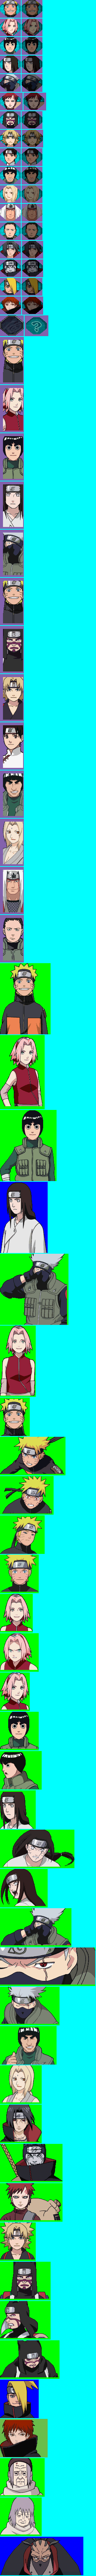 Naruto Shippuden; Ninja Council 4 - Character Icons